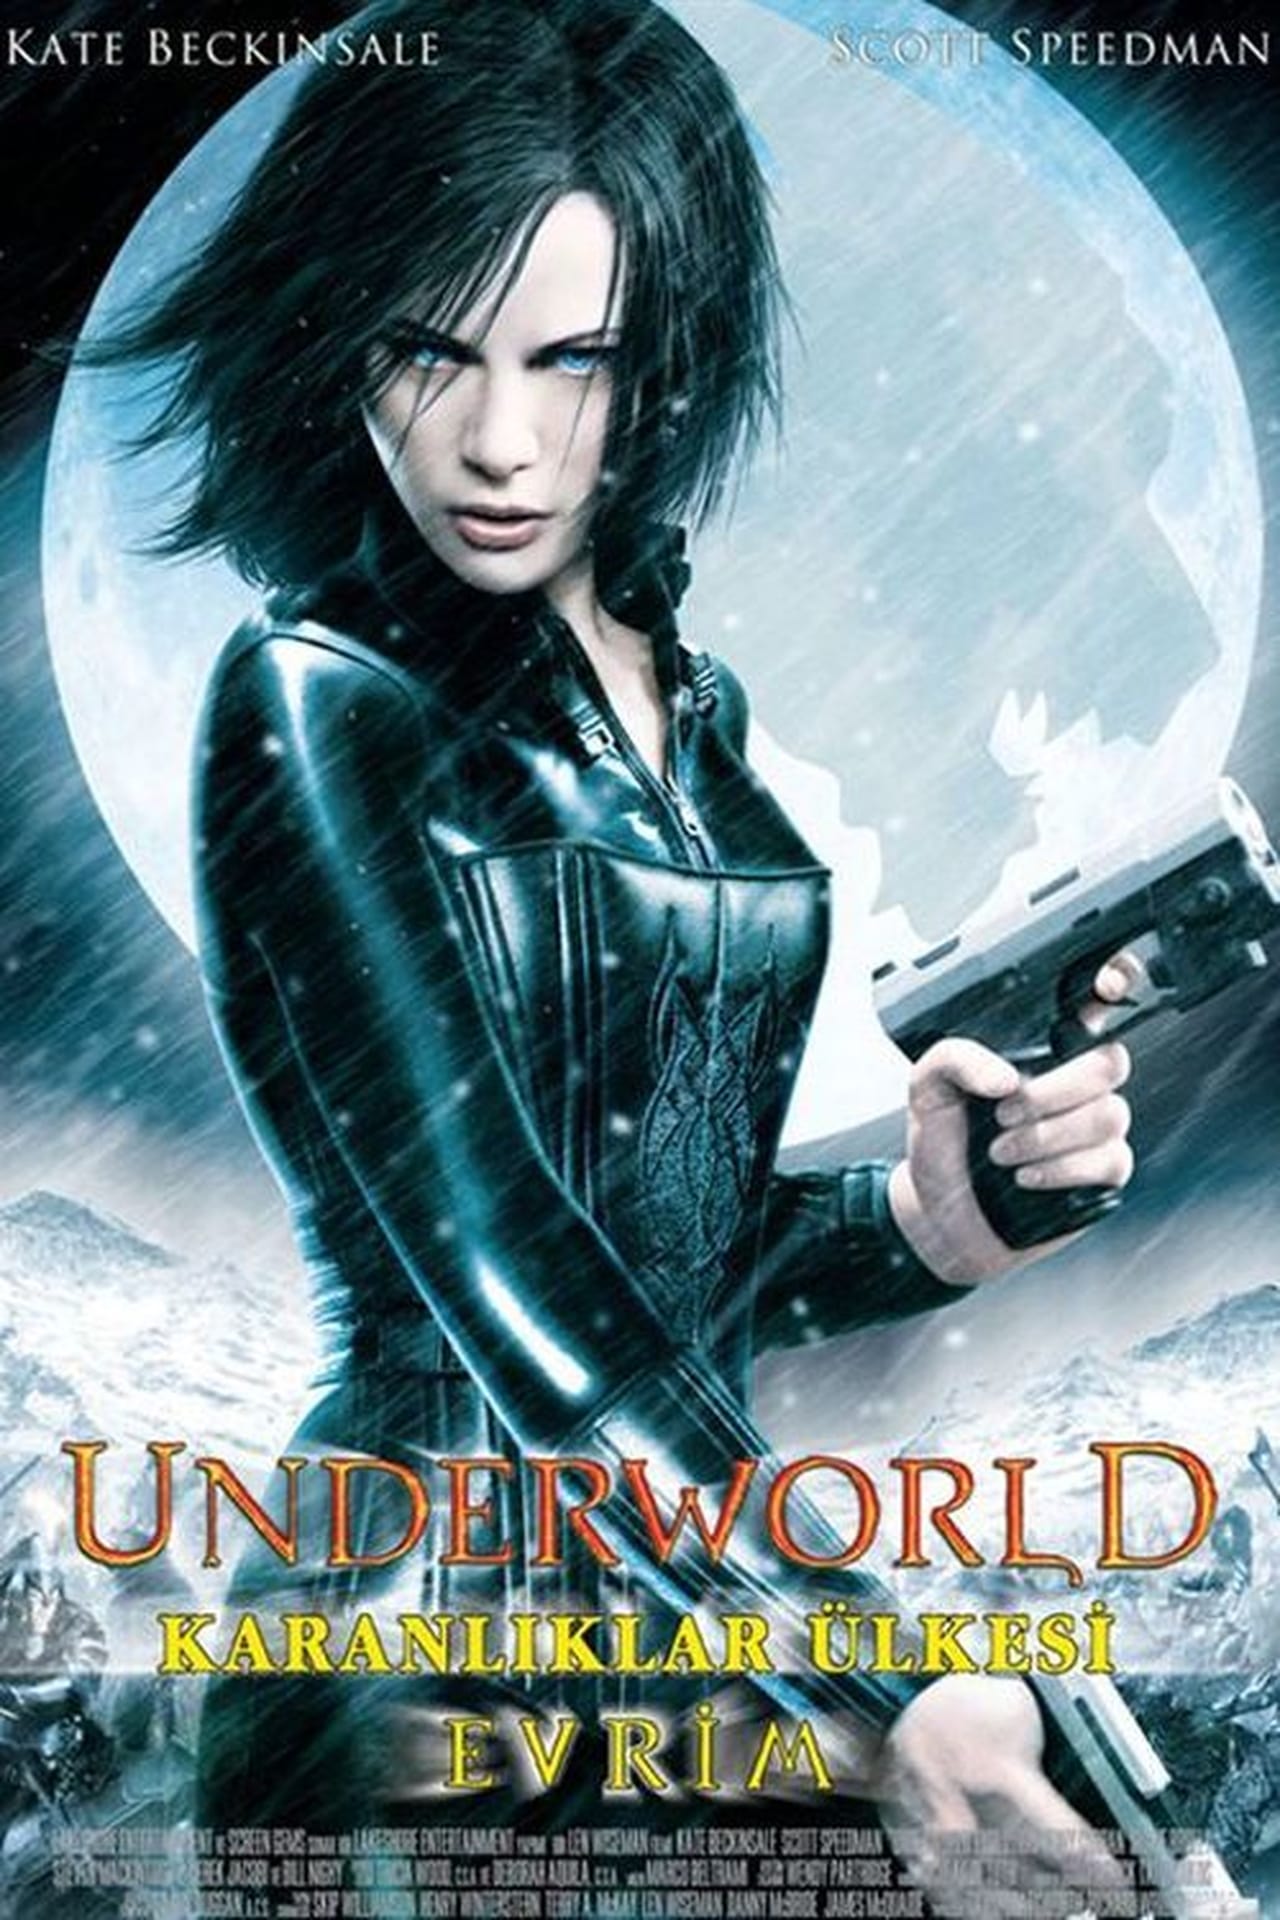 Underworld: Evolution (2006) 448Kbps 23.976Fps 48Khz 5.1Ch DVD Turkish Audio TAC